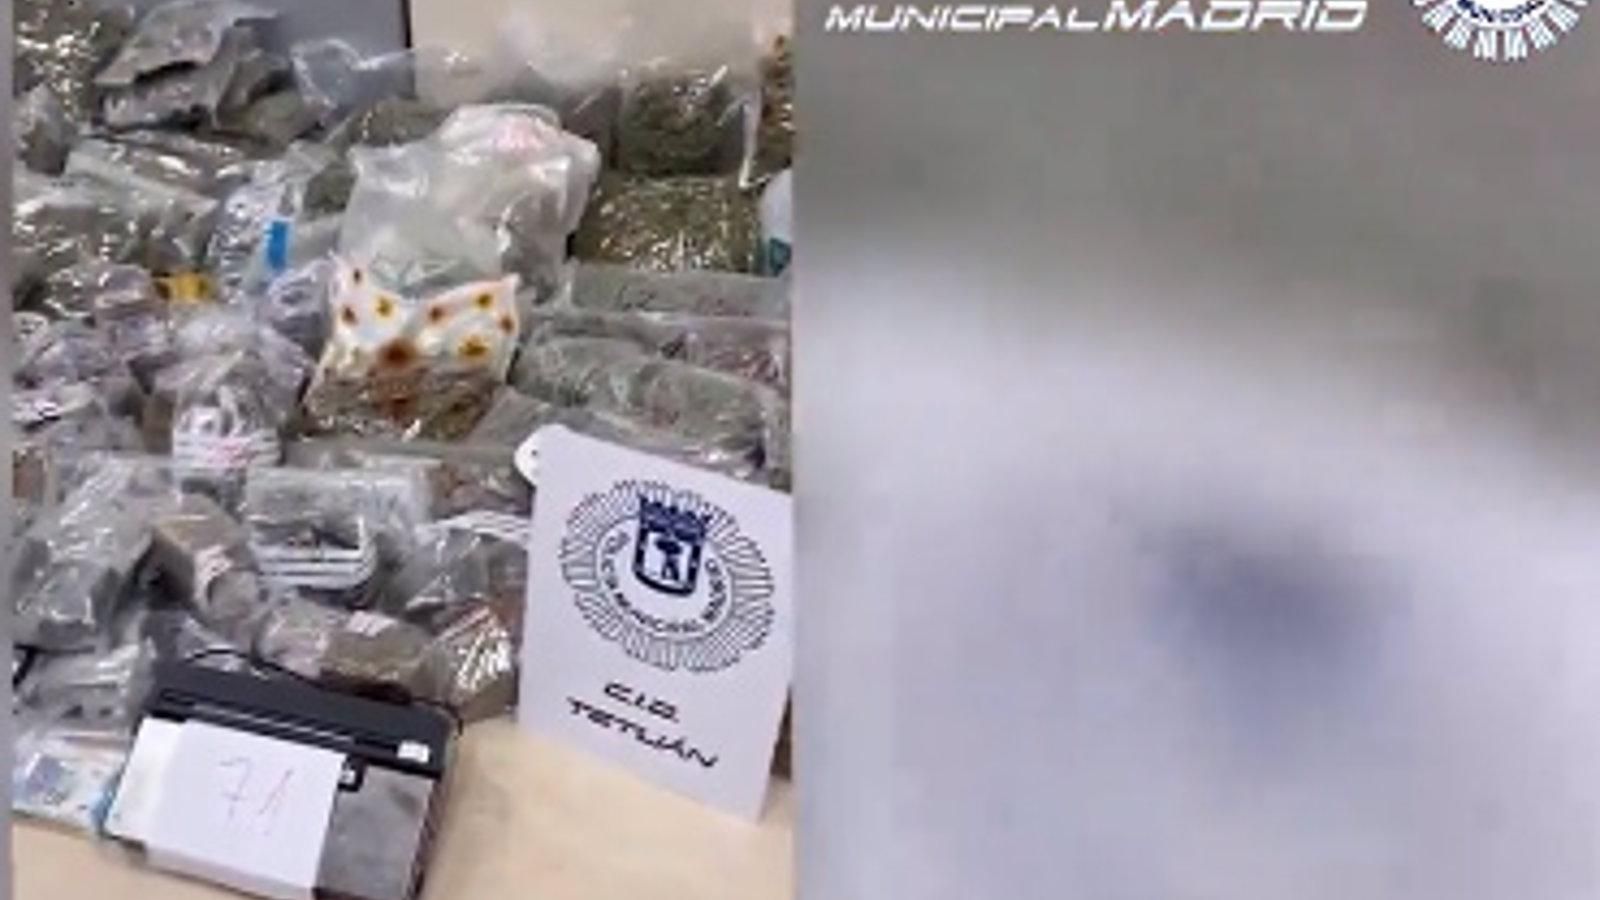  Dos detenidos y 75 kilos de marihuana y hachís incautados en una vivienda de Tetuán